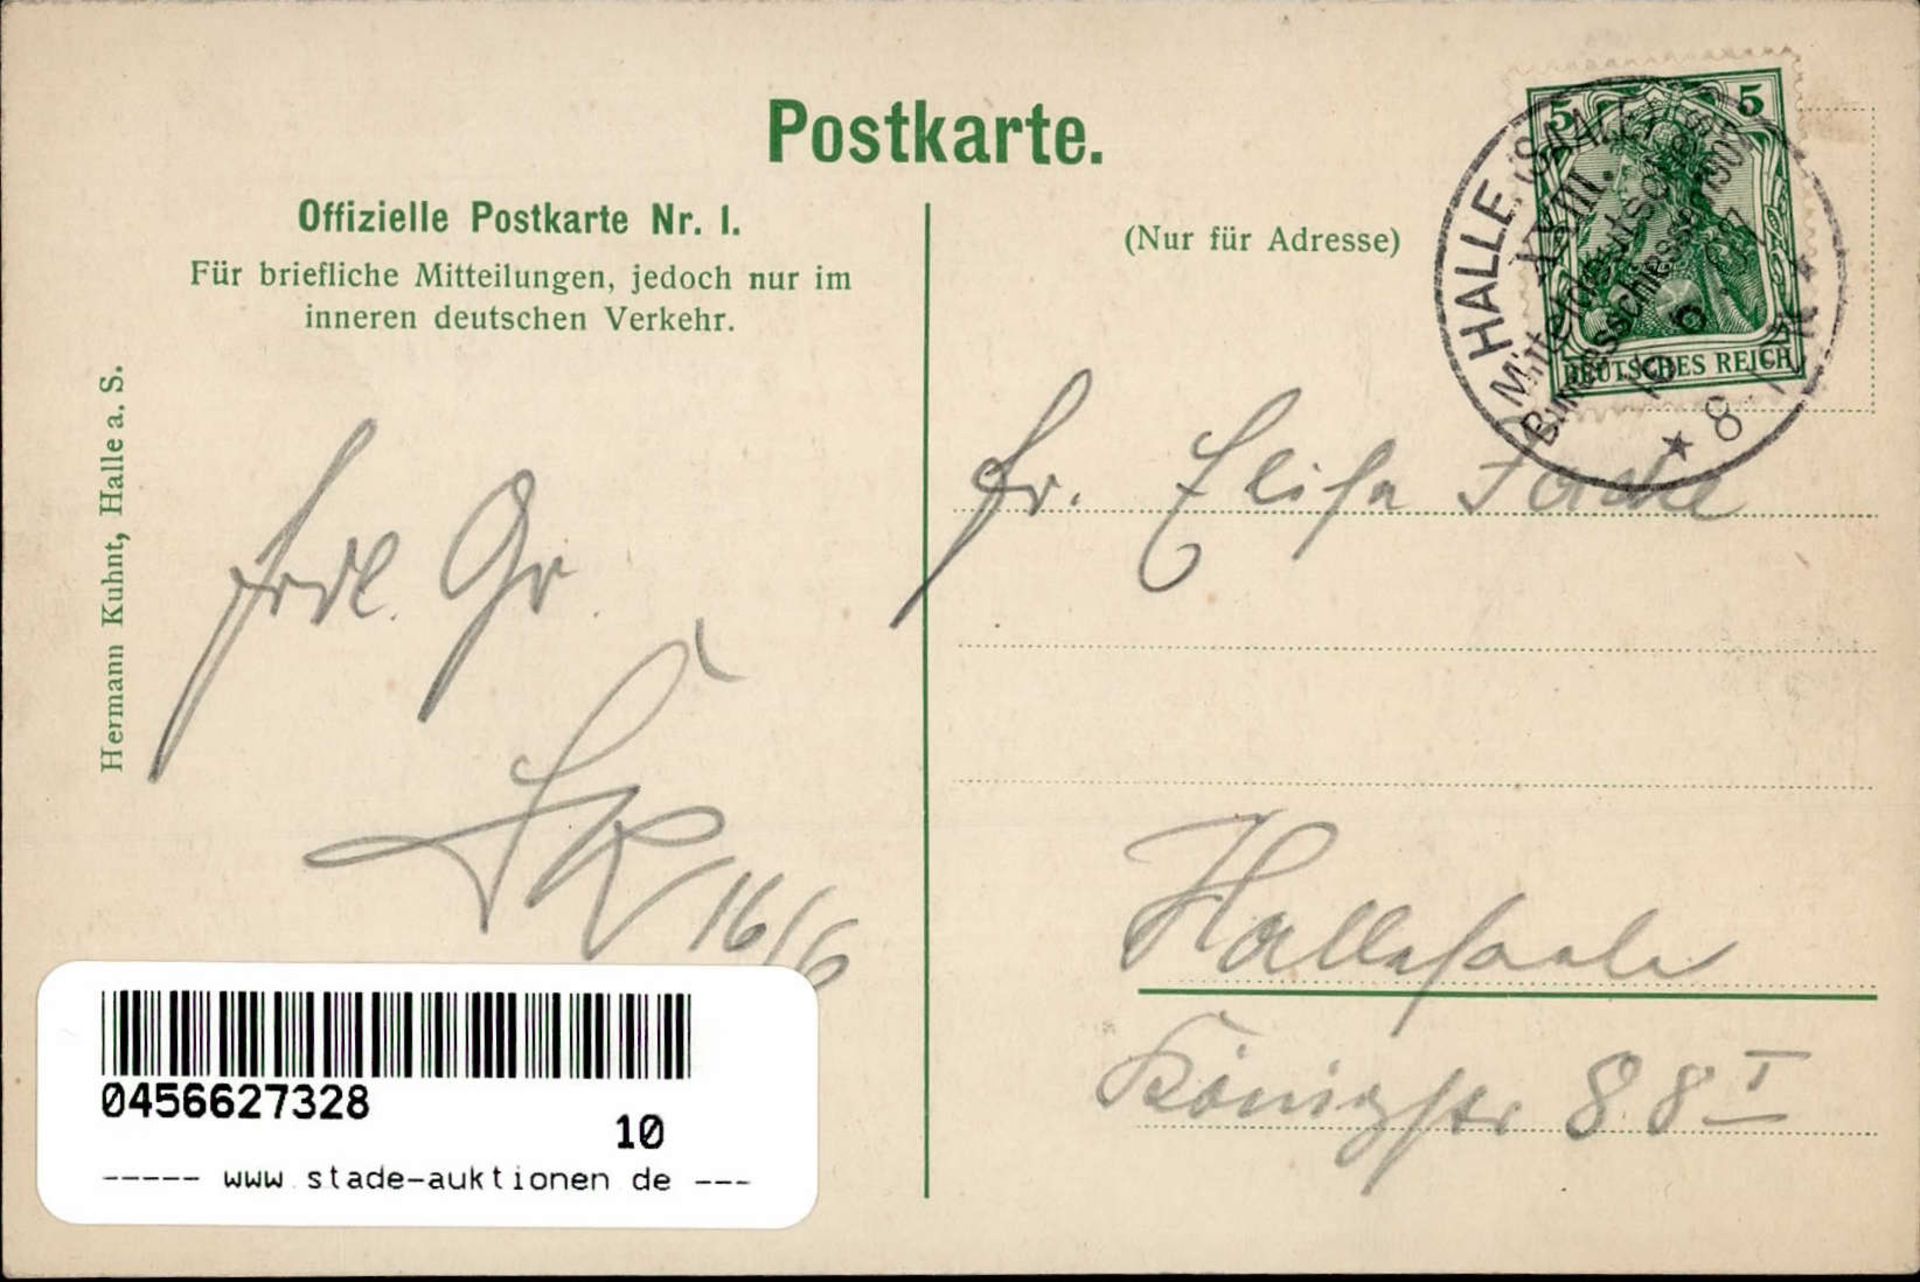 HALLE,Saale - XXIII MD BUNDESSCHIESSEN 1907 Offiz.Karte Nr. 1 mit klarem S-o v. 16.6.07 I - Bild 2 aus 2